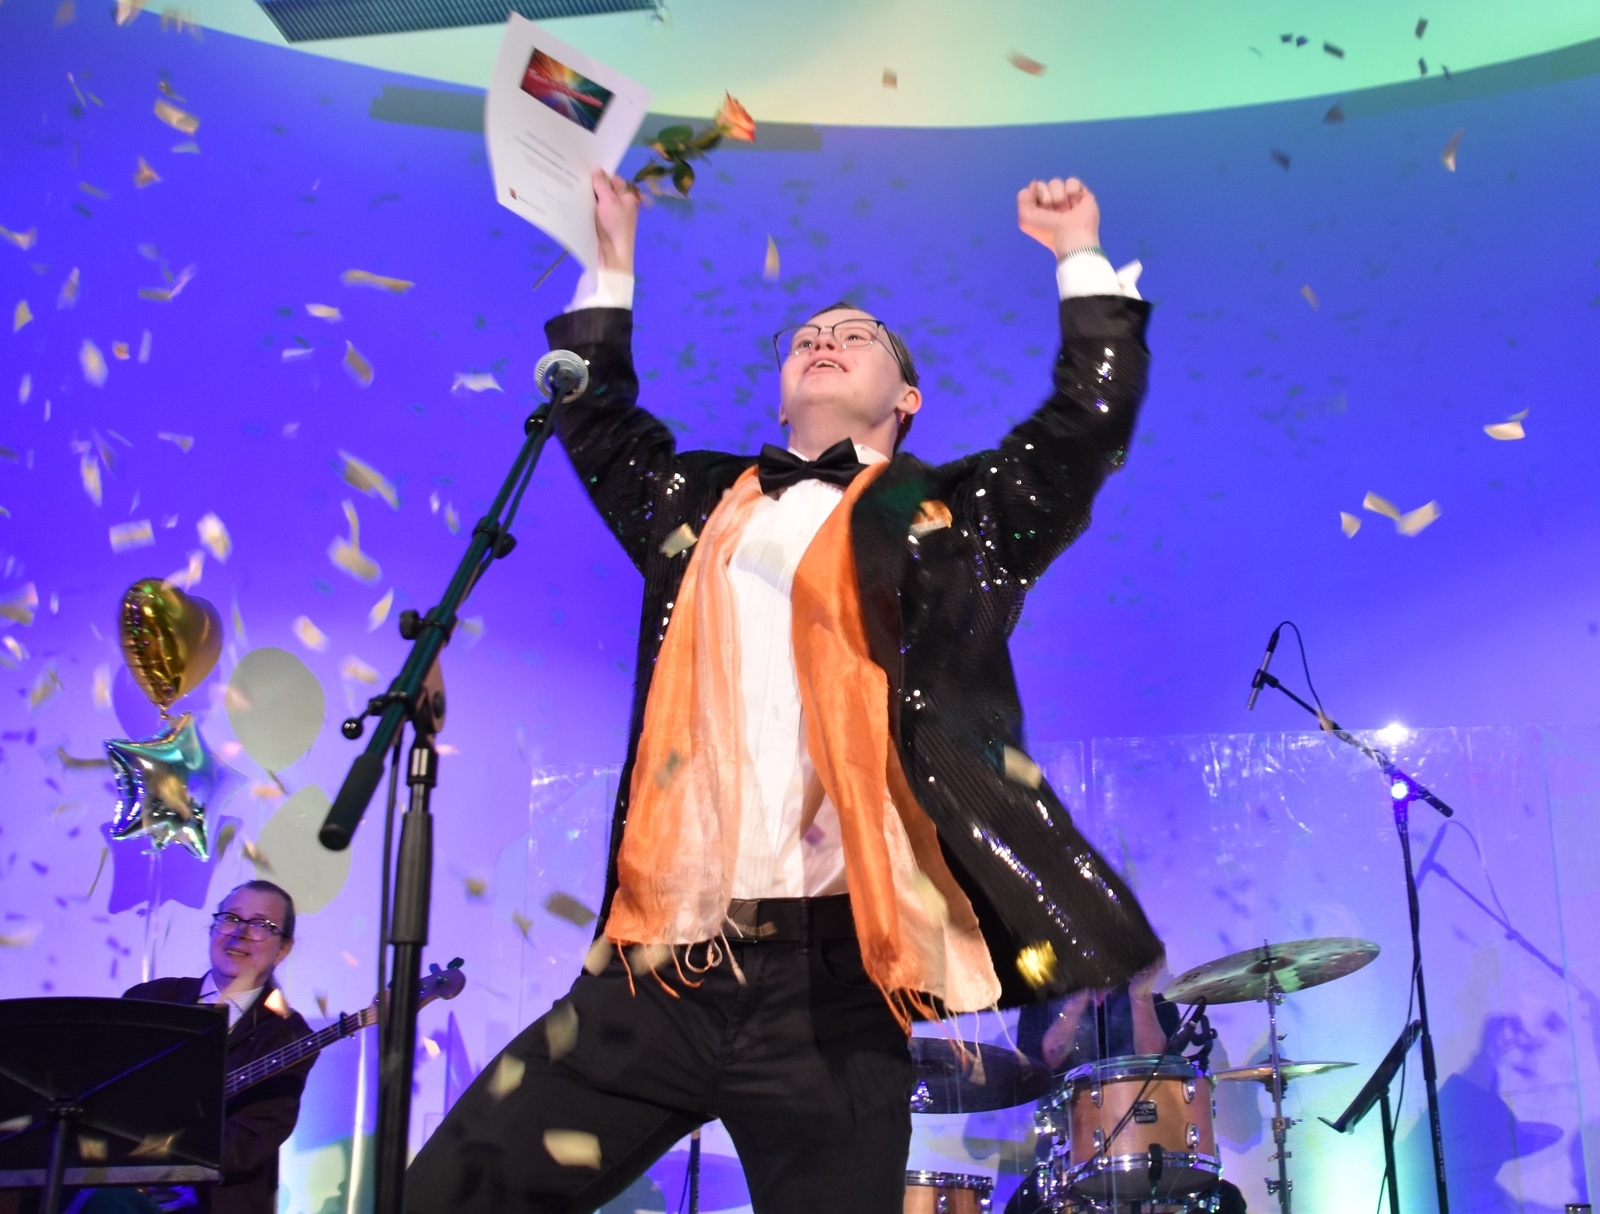 Glädjen visste inga gränser när Hannes Torstensson vann Funkisfestivalen med sitt bidrag "En dag".